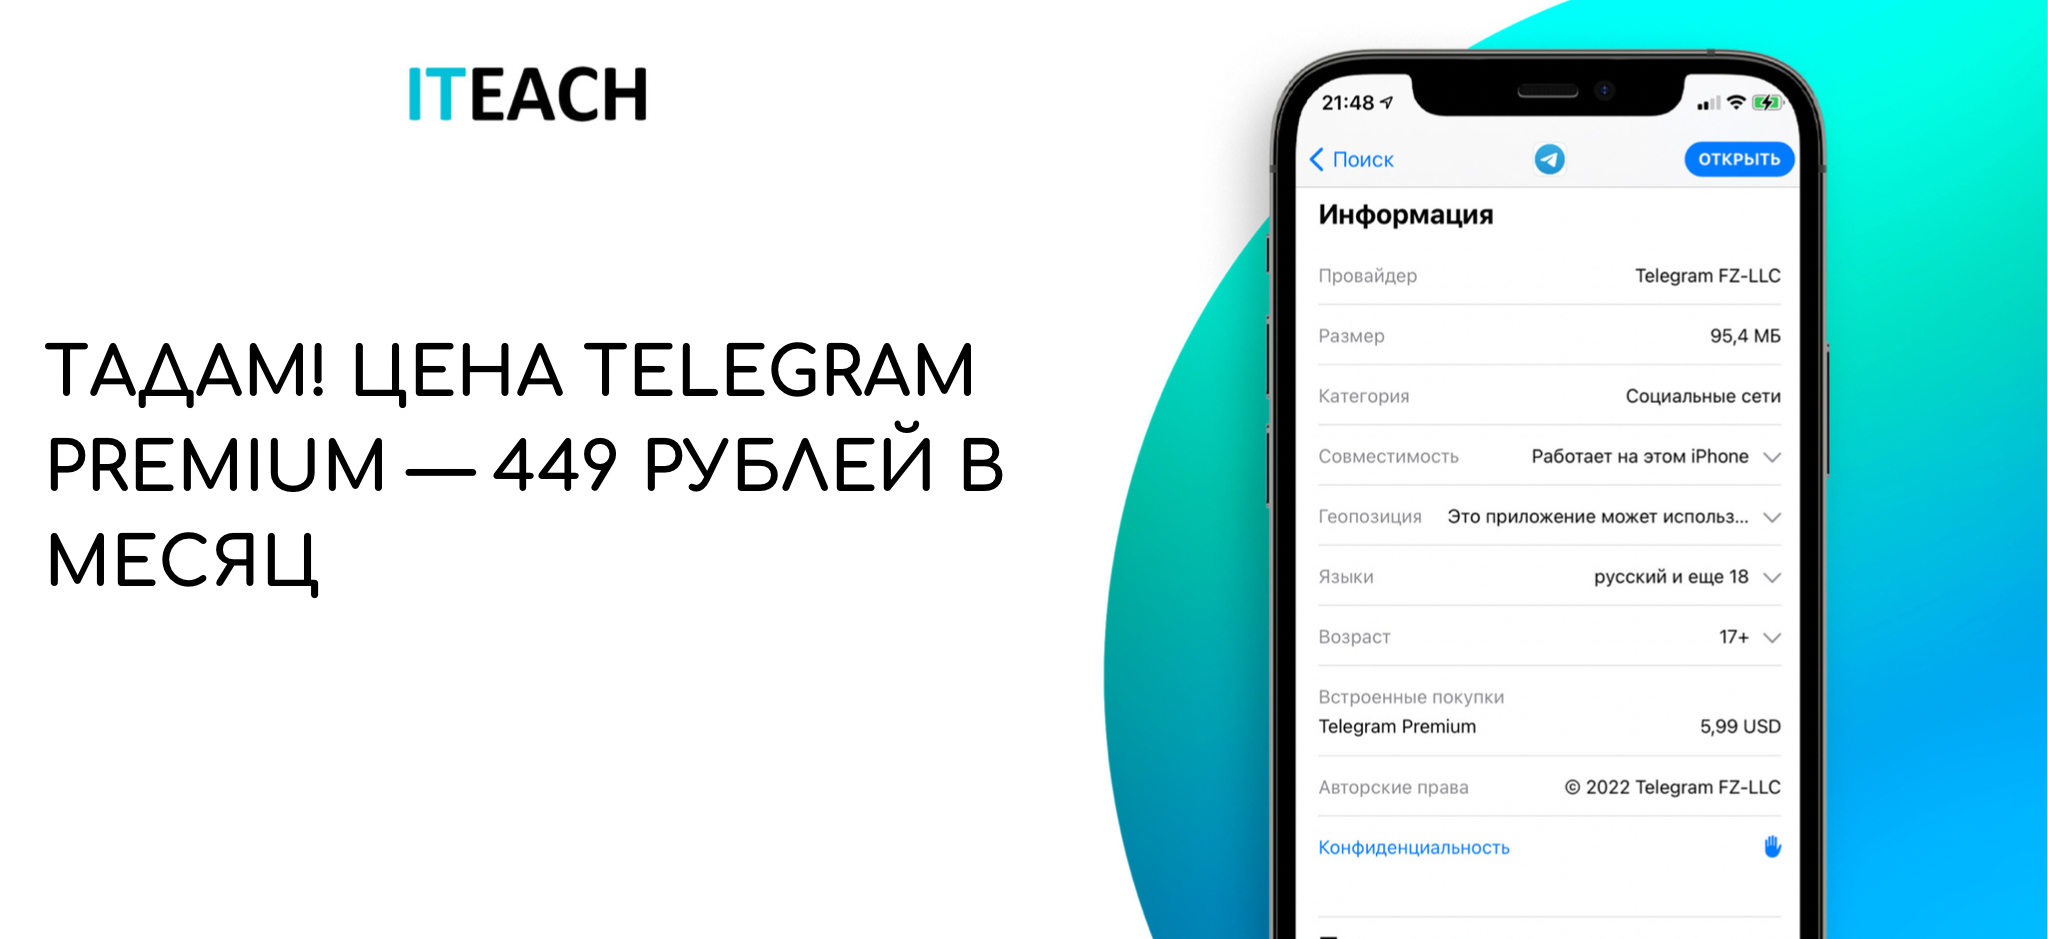 Скачать телеграмм премиум на андроид бесплатно последняя версия на русском языке без вирусов фото 73